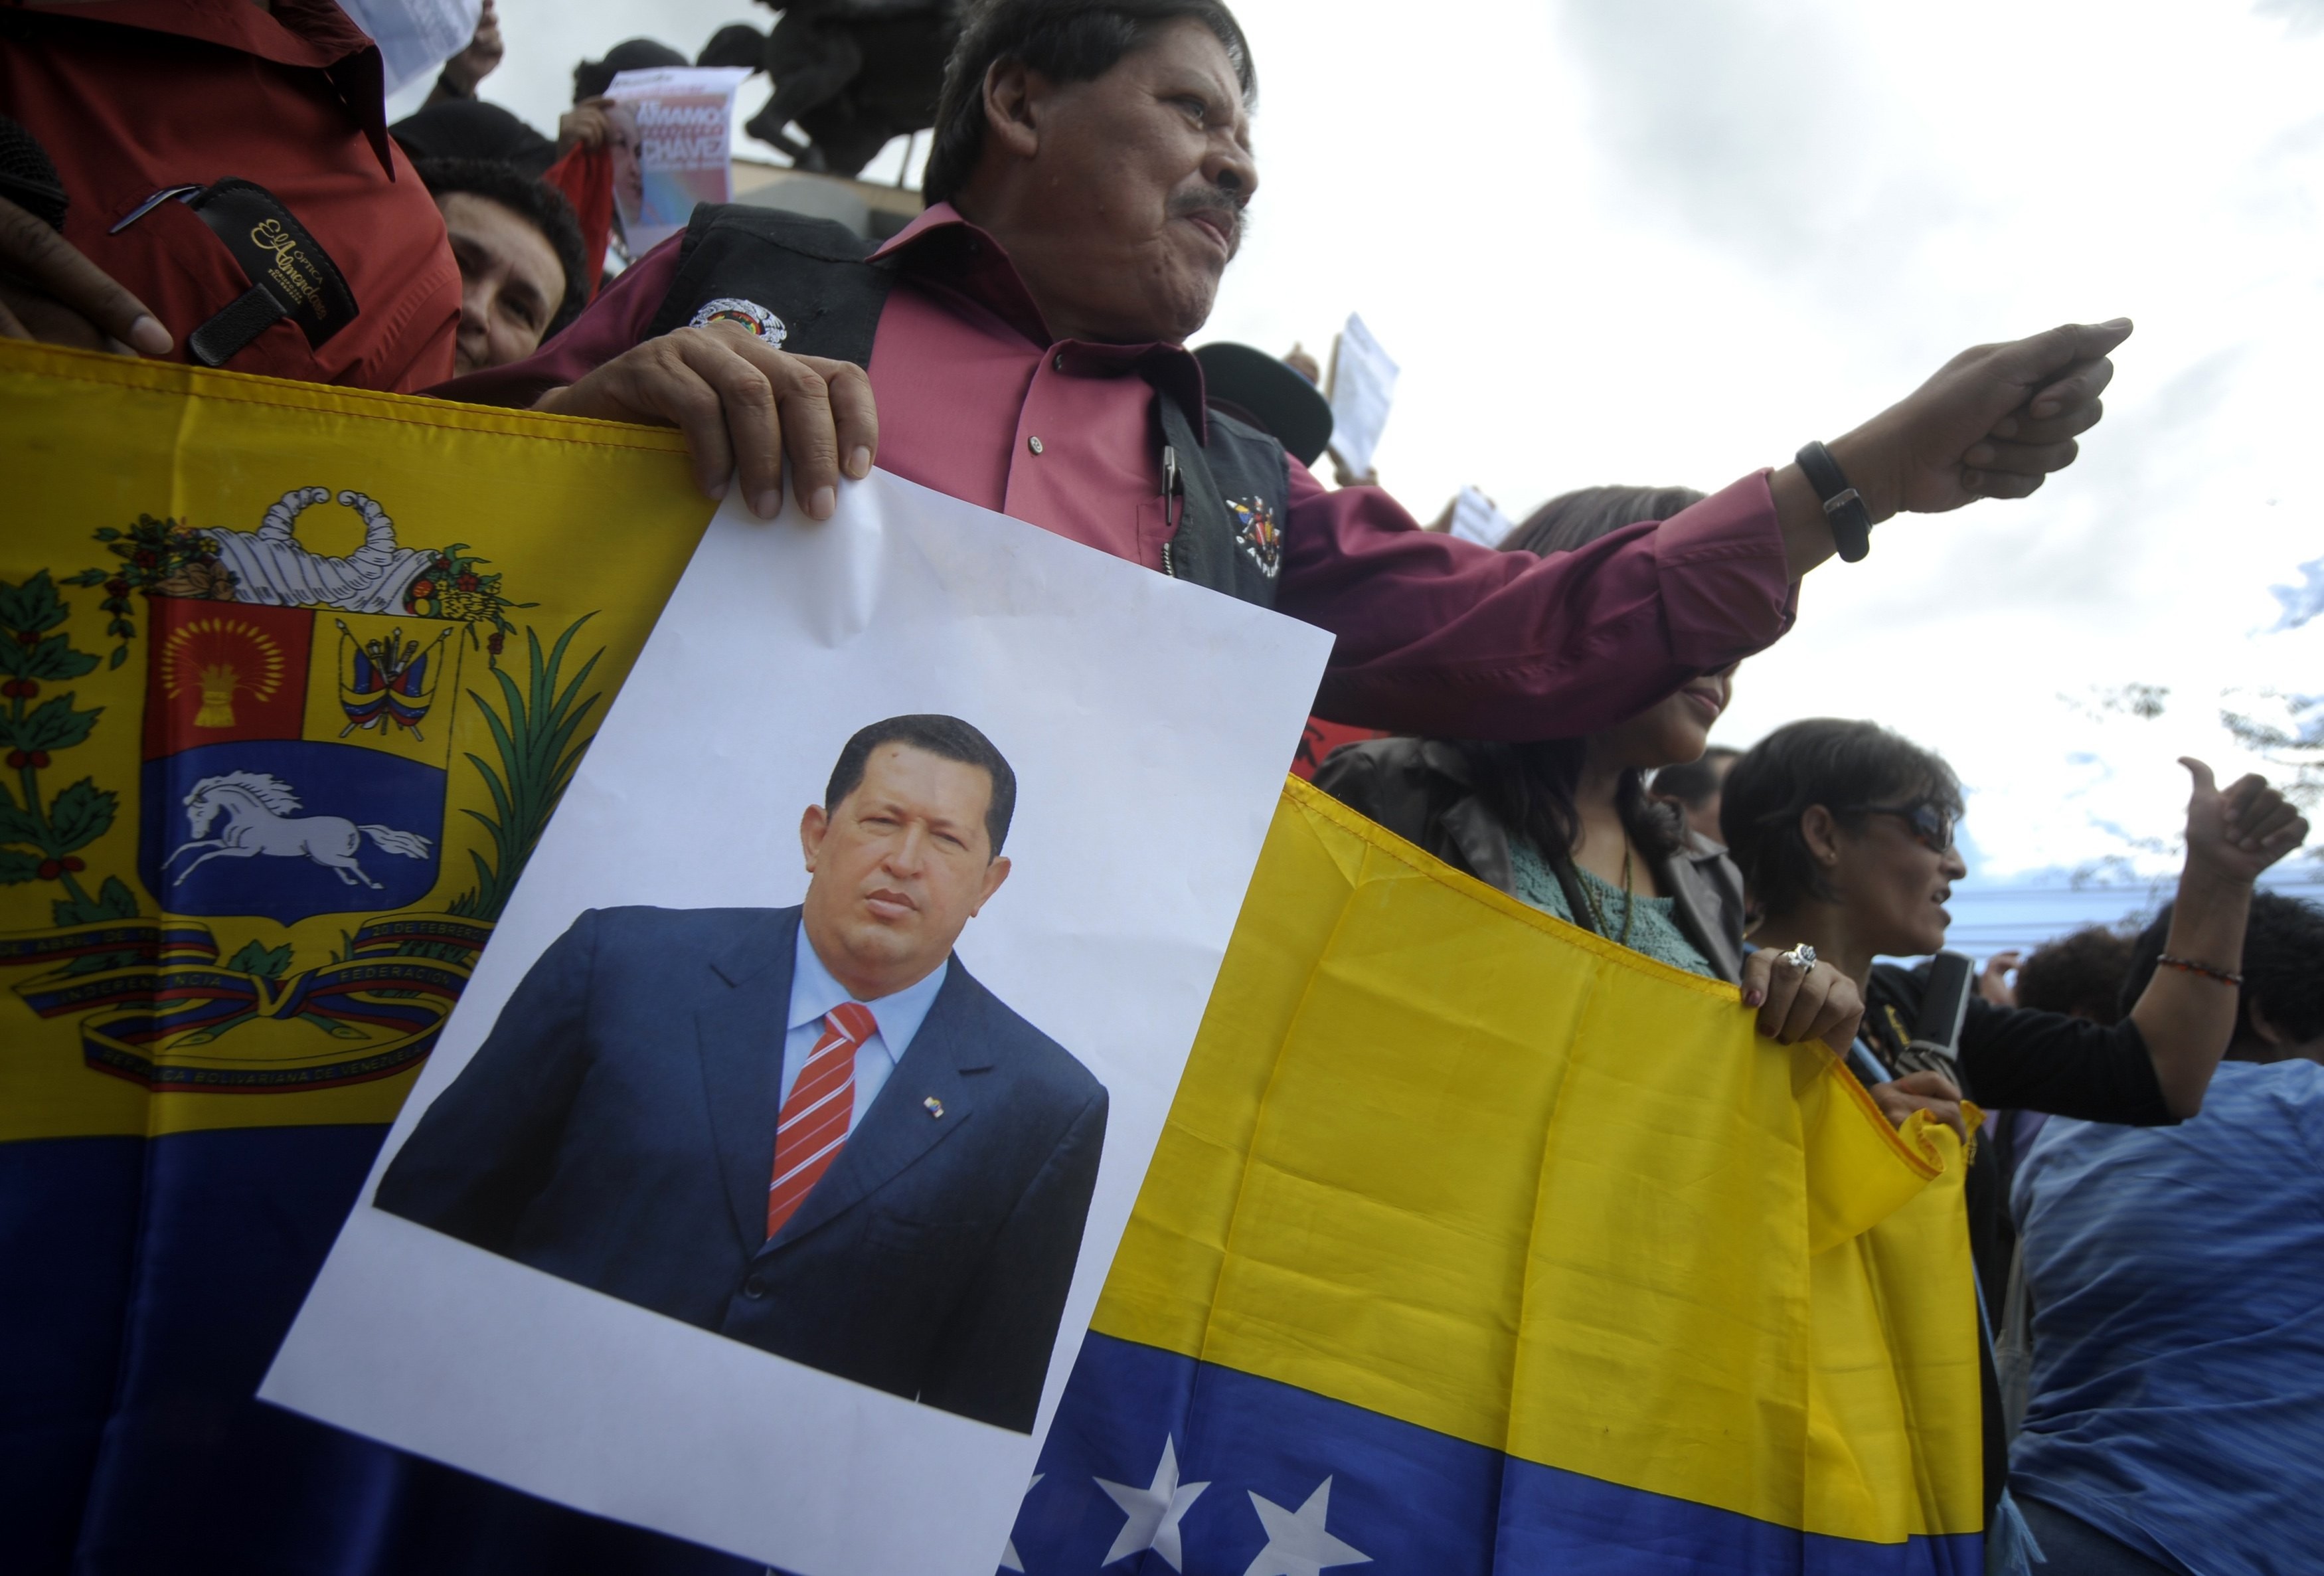 Manifestantes rezam pela saúde de Chávez em Tegucigalpa neste sábado (15). (Foto: Jorge Cabrera / REUTERS)